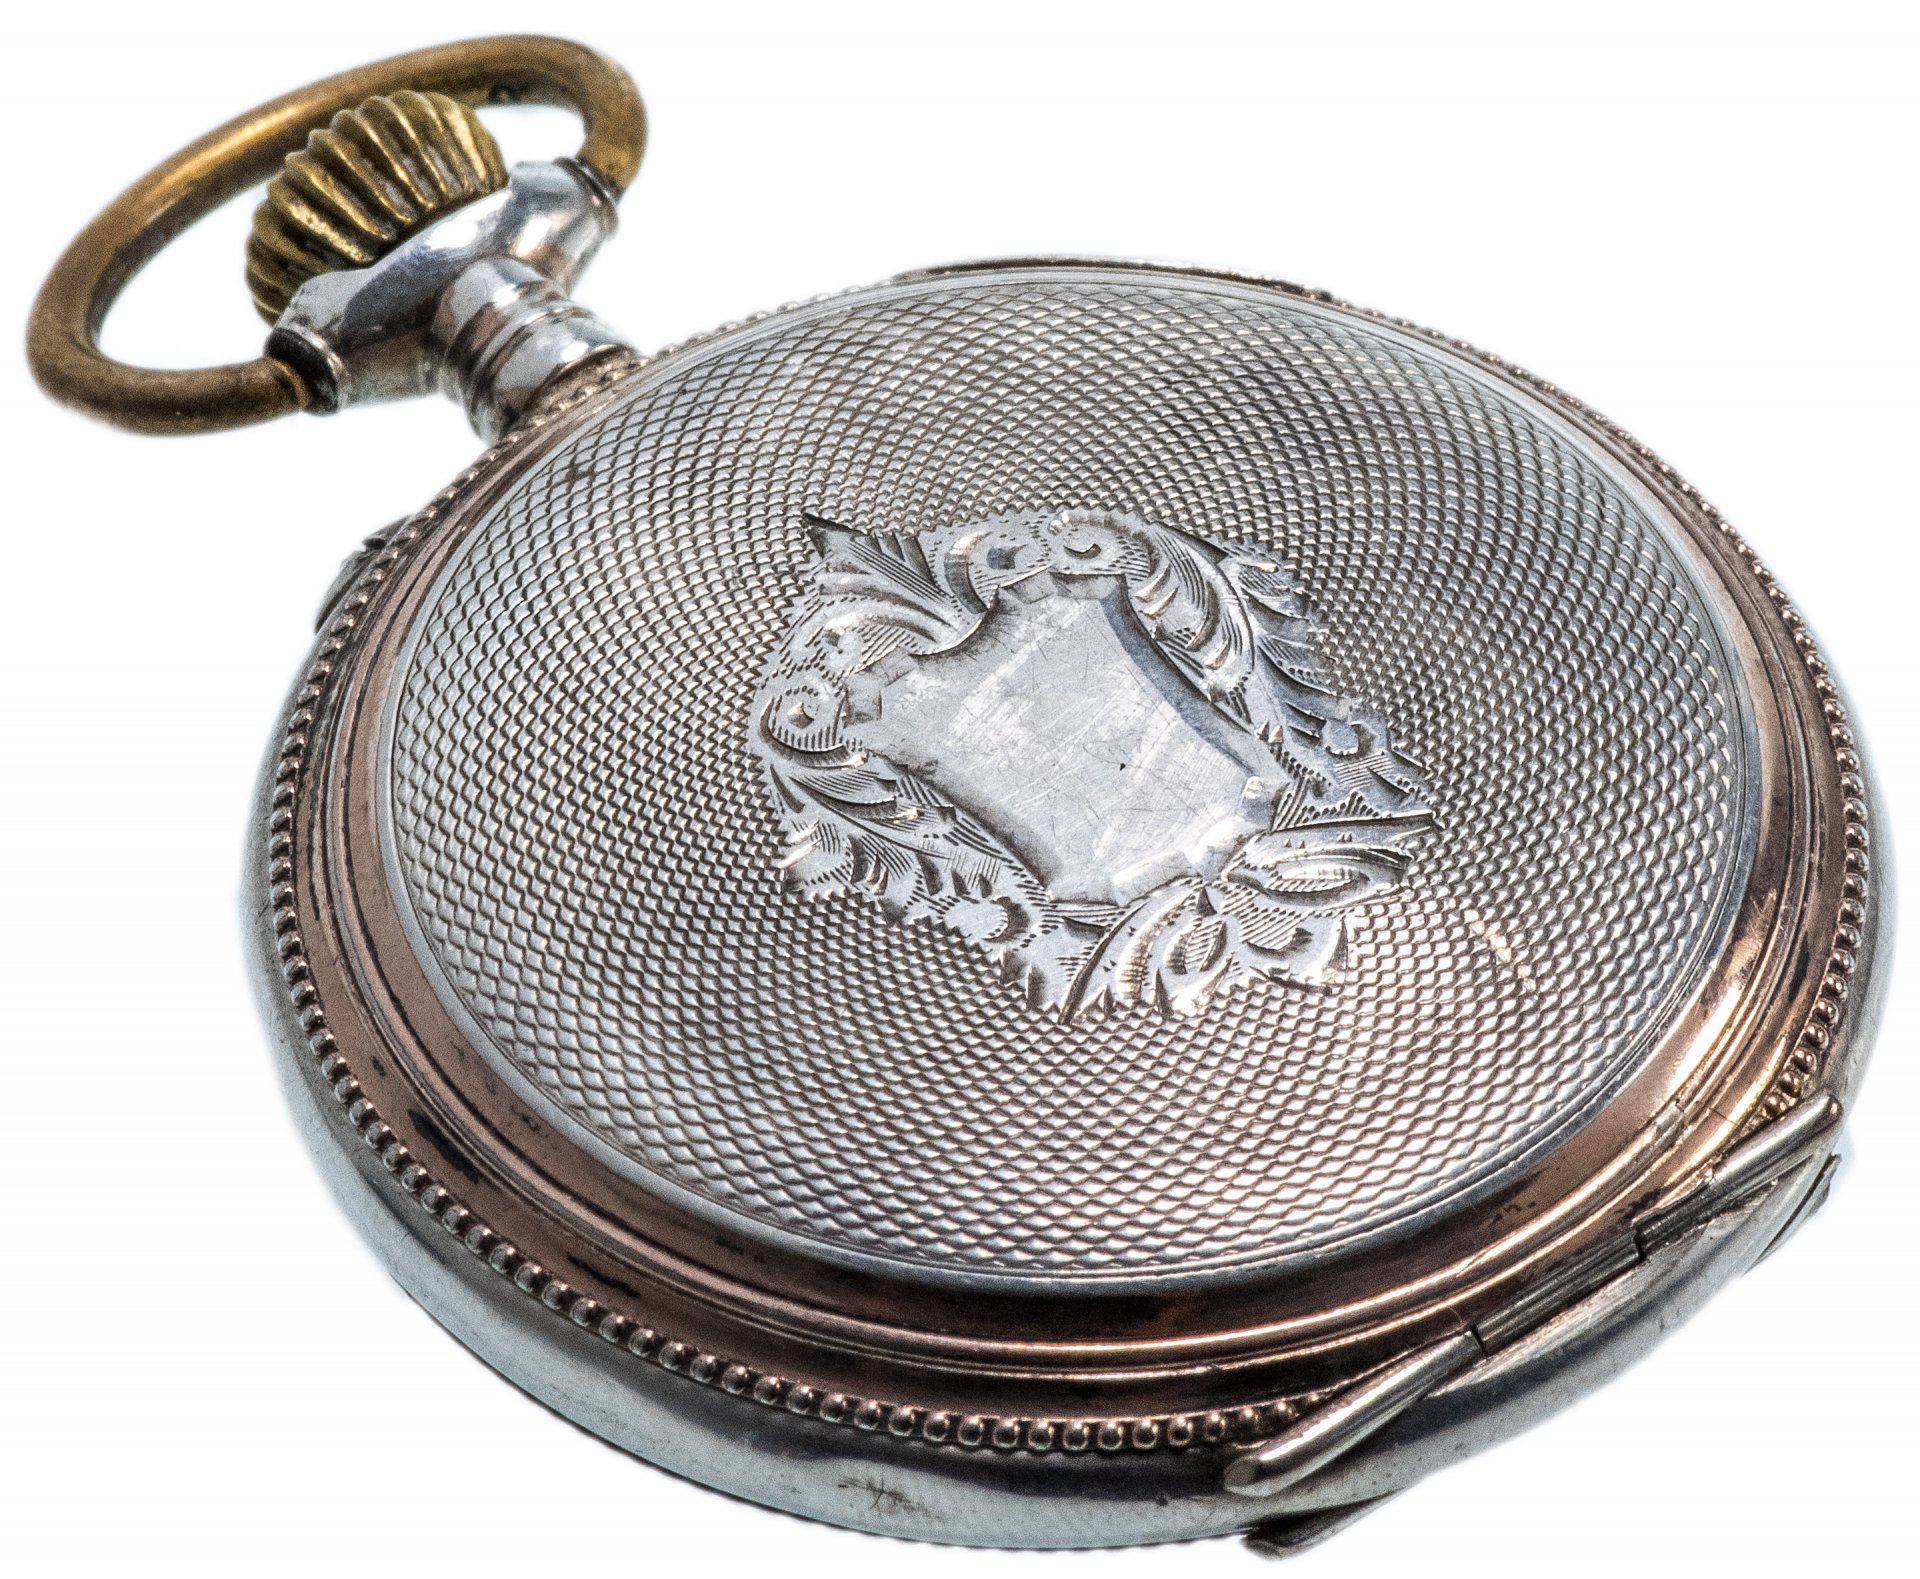 Карманные часы серебро. Карманные часы Galonne Швейцария. Часы карманные швейцарские Galonne серебро 0.800 проба. Часы Galonne карманные серебряные. Часы карманные Bellaria серебряные.